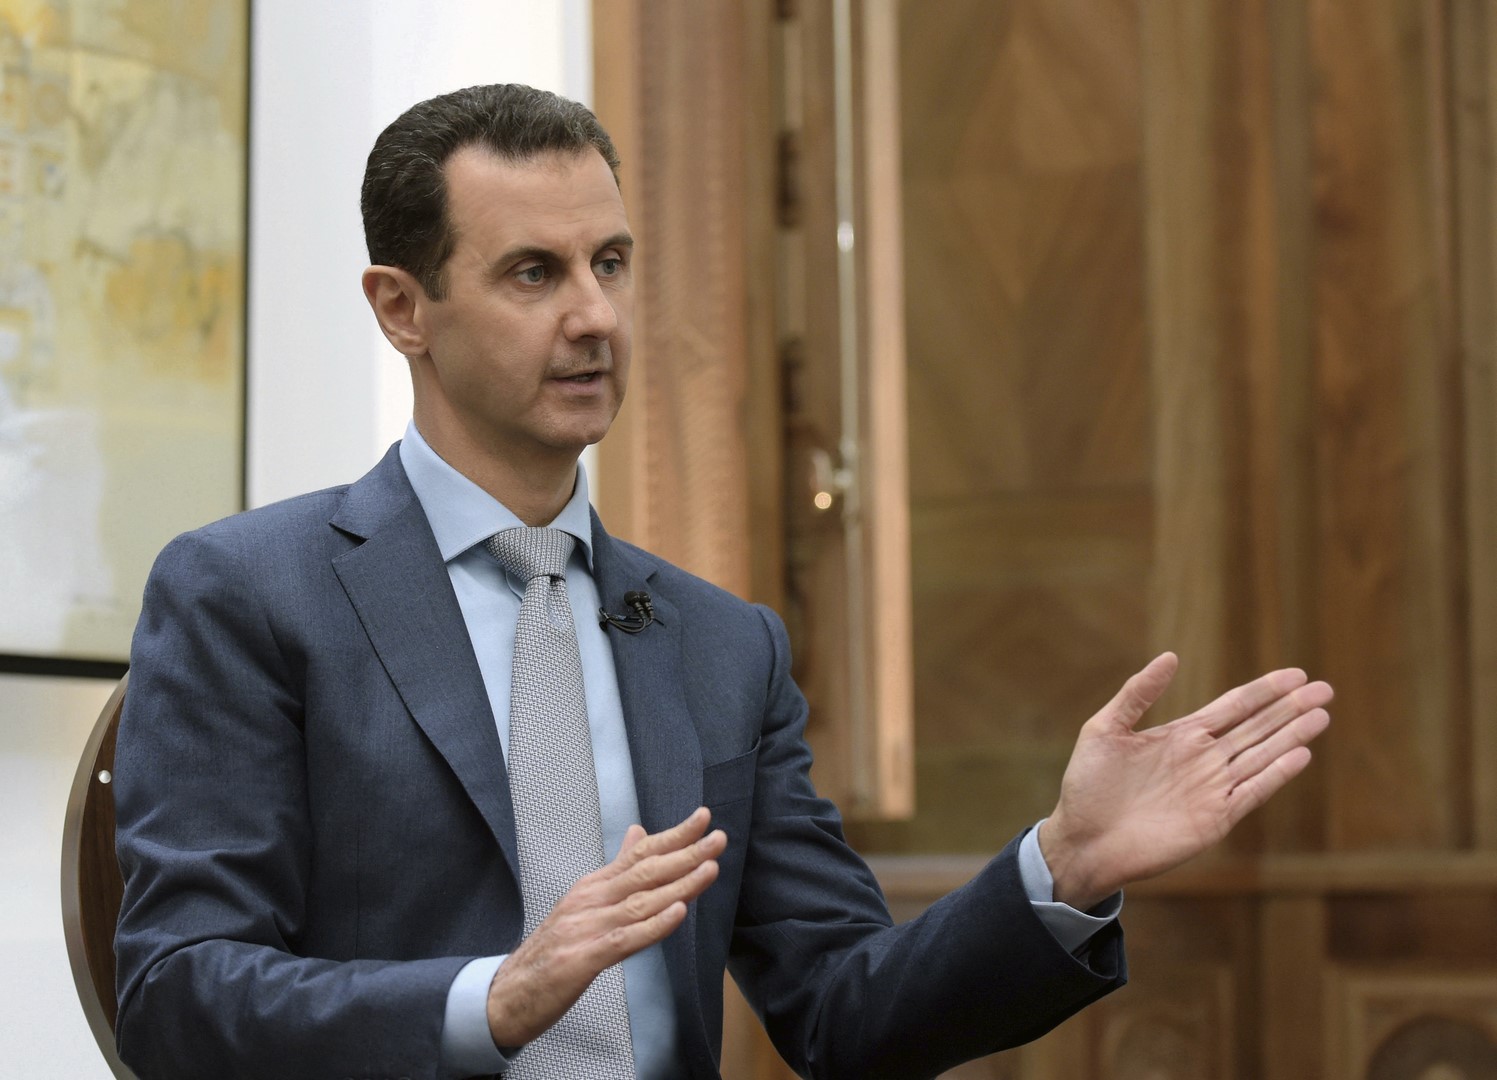 El presidente sirio, Bashar al Assad, dice que el veto de Trump a la entrada de sirios a EU va dirigido a los terroristas, no a los ciudadanos. (Archivo/AP)